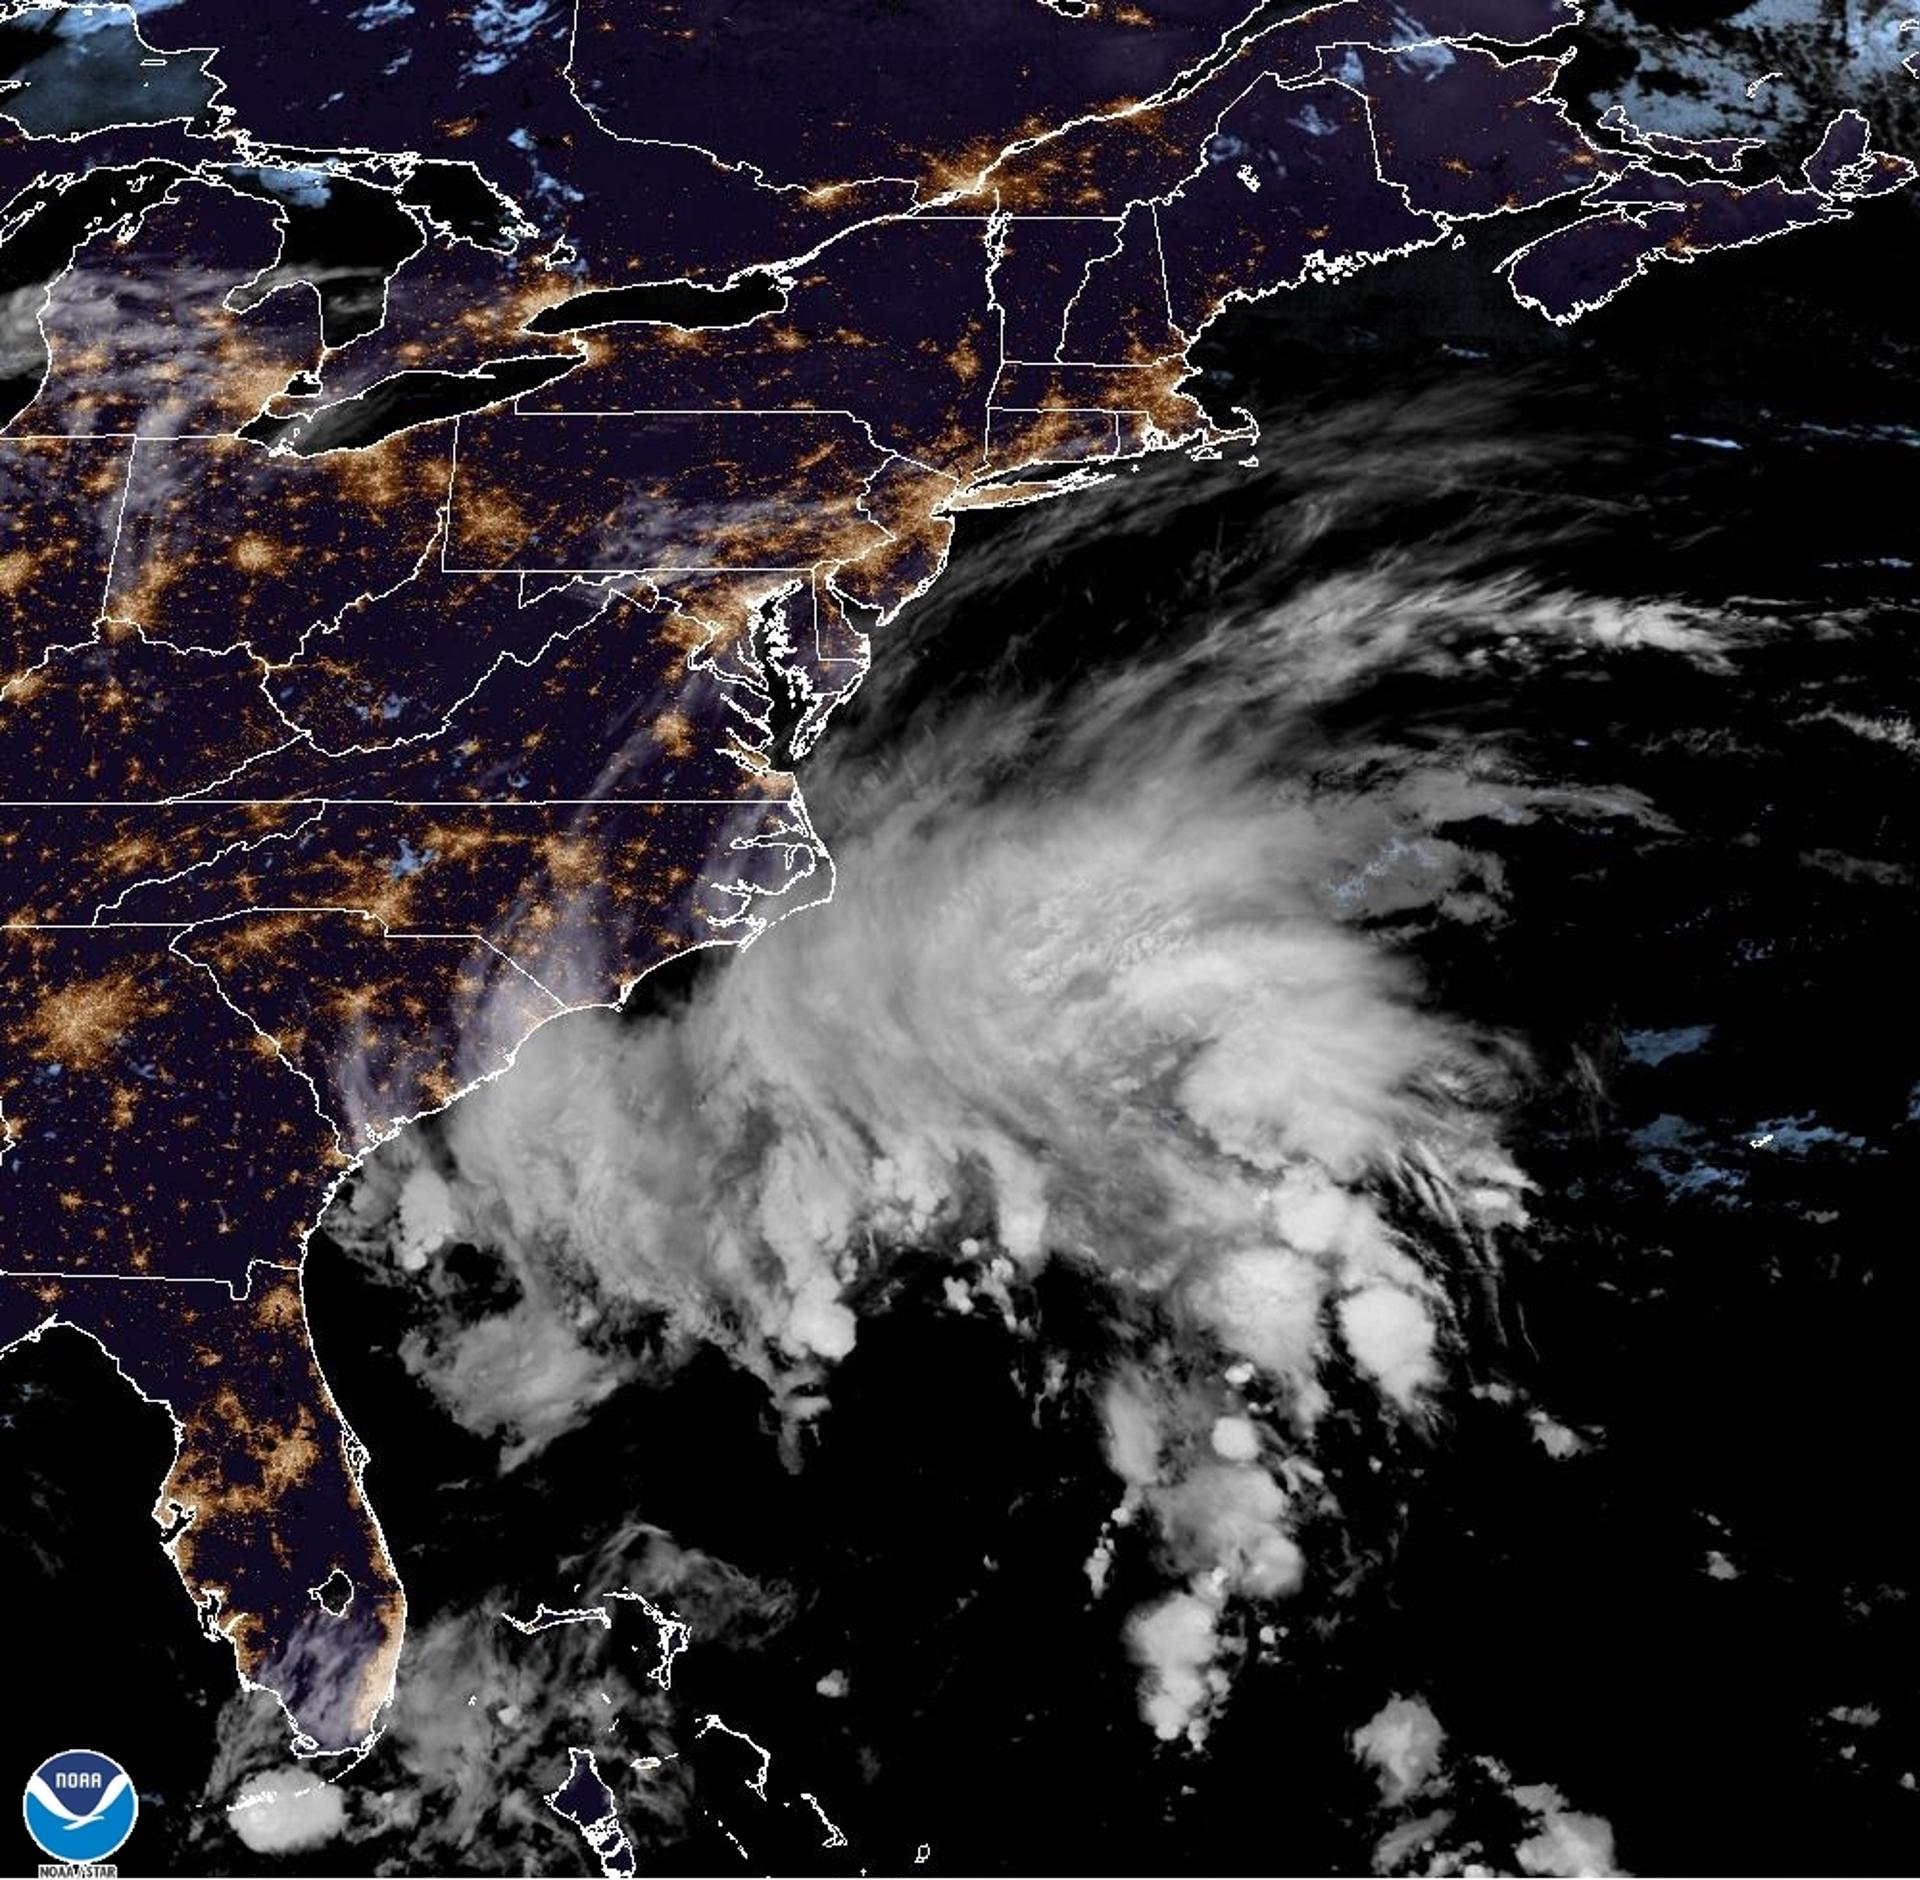 Fotografía satelital cedida este miércoles por la Oficina Nacional de Administración Oceánica y Atmosférica (NOAA) a través del Centro Nacional de Huracanes (NHC) de Estados Unidos donde se muestra la localización del ciclón tropical en el Atlántico frente a las costas estadounidenses. EFE/ NOAA-NHC SÓLO USO EDITORIAL/SÓLO DISPONIBLE PARA ILUSTRAR LA NOTICIA QUE ACOMPAÑA (CRÉDITO OBLIGATORIO)
